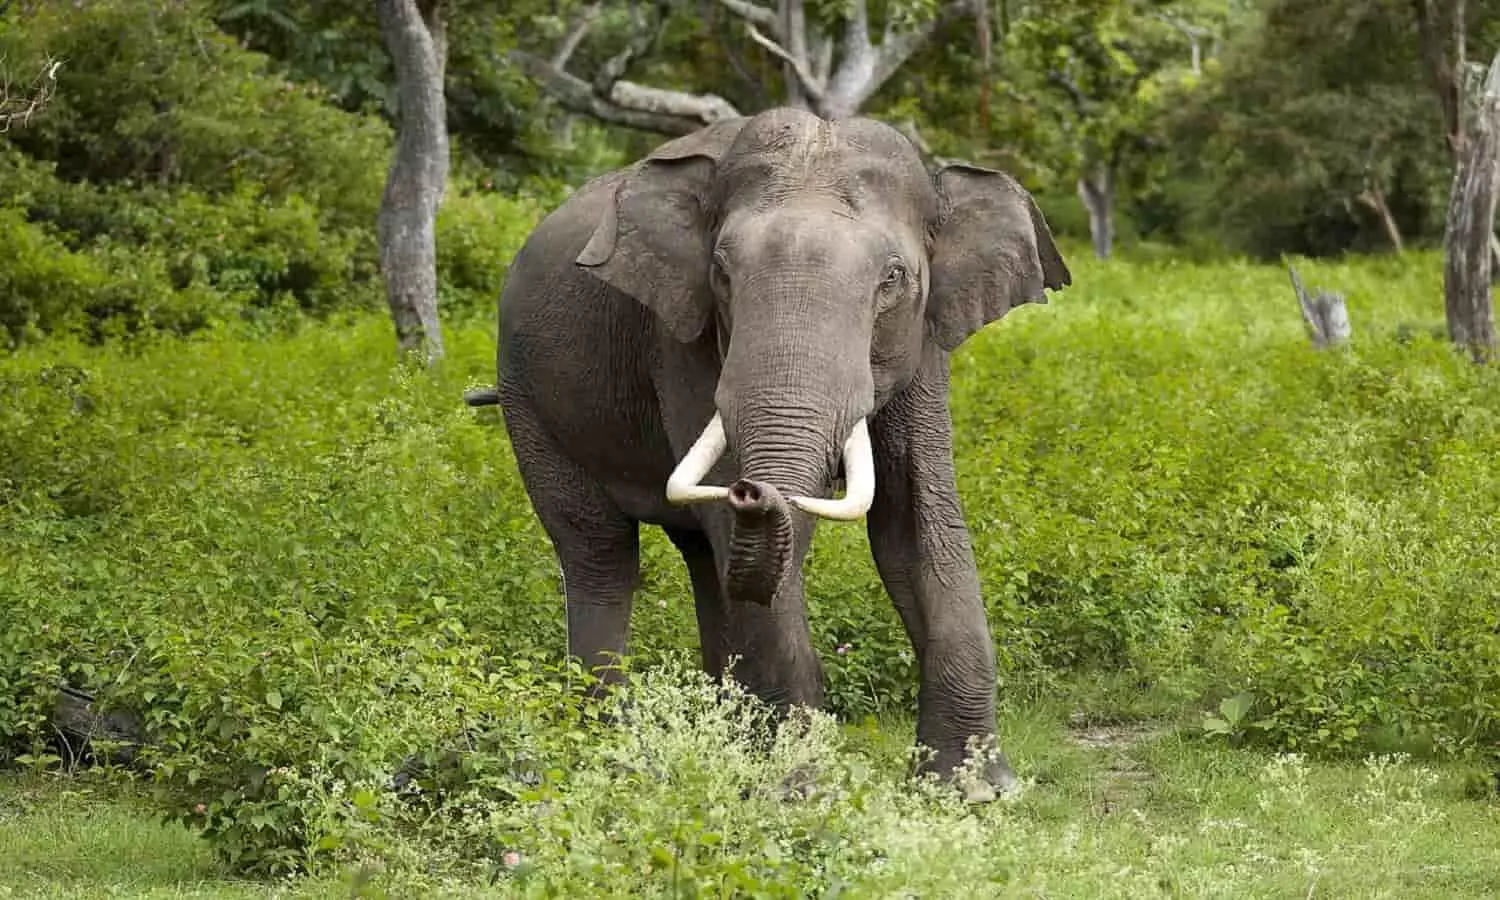 अनूपपुर: शराबी का हाथी से उलझना पड़ा महंगा, सूंड में लपेटकर दी पटखनी